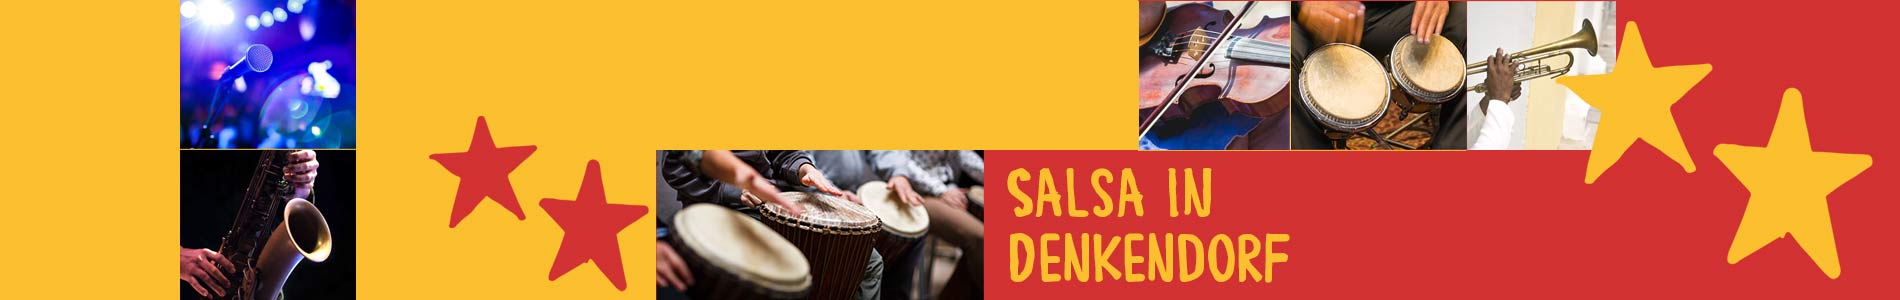 Salsa in Denkendorf – Salsa lernen und tanzen, Tanzkurse, Partys, Veranstaltungen